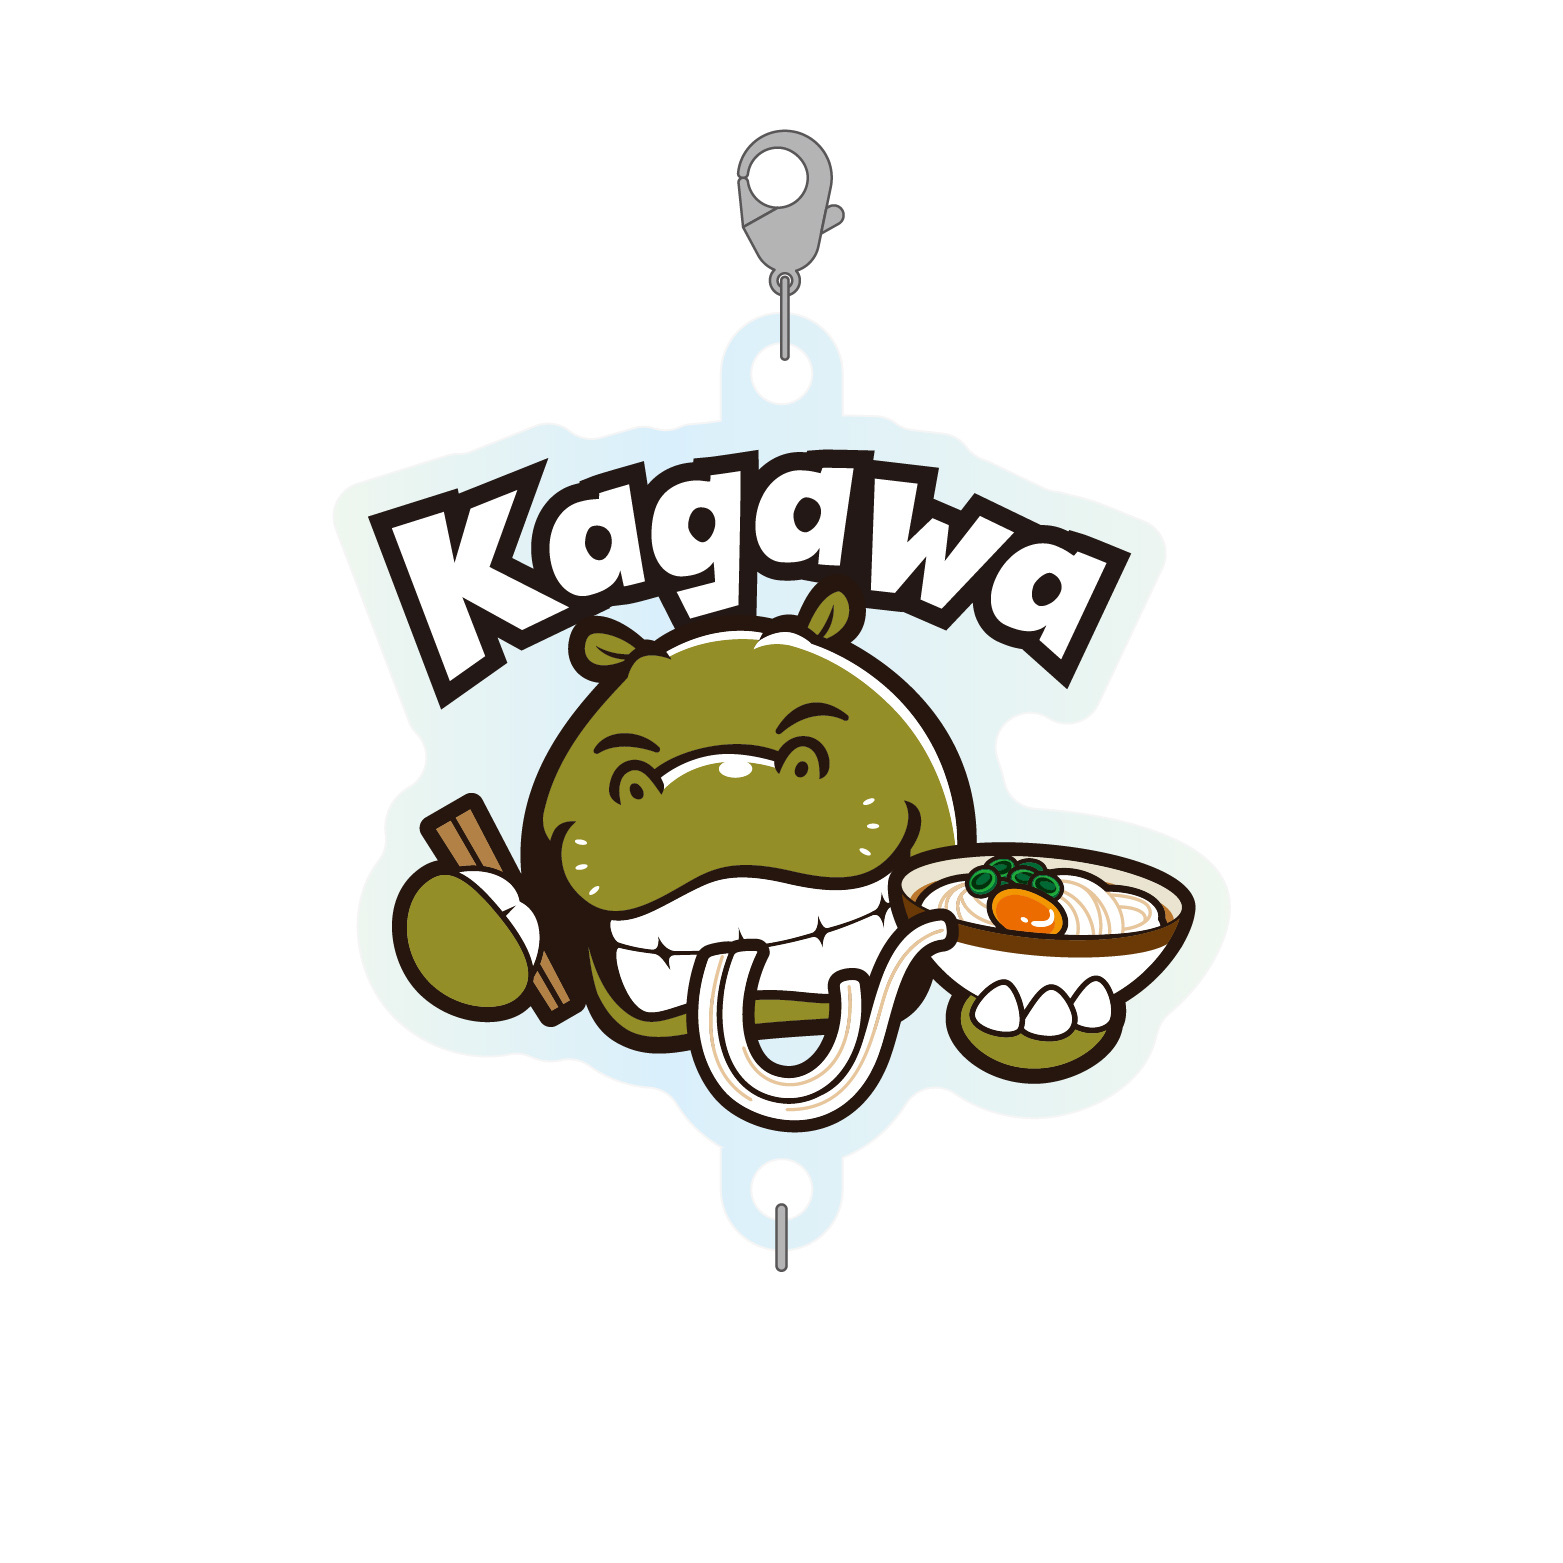 09_kagawa